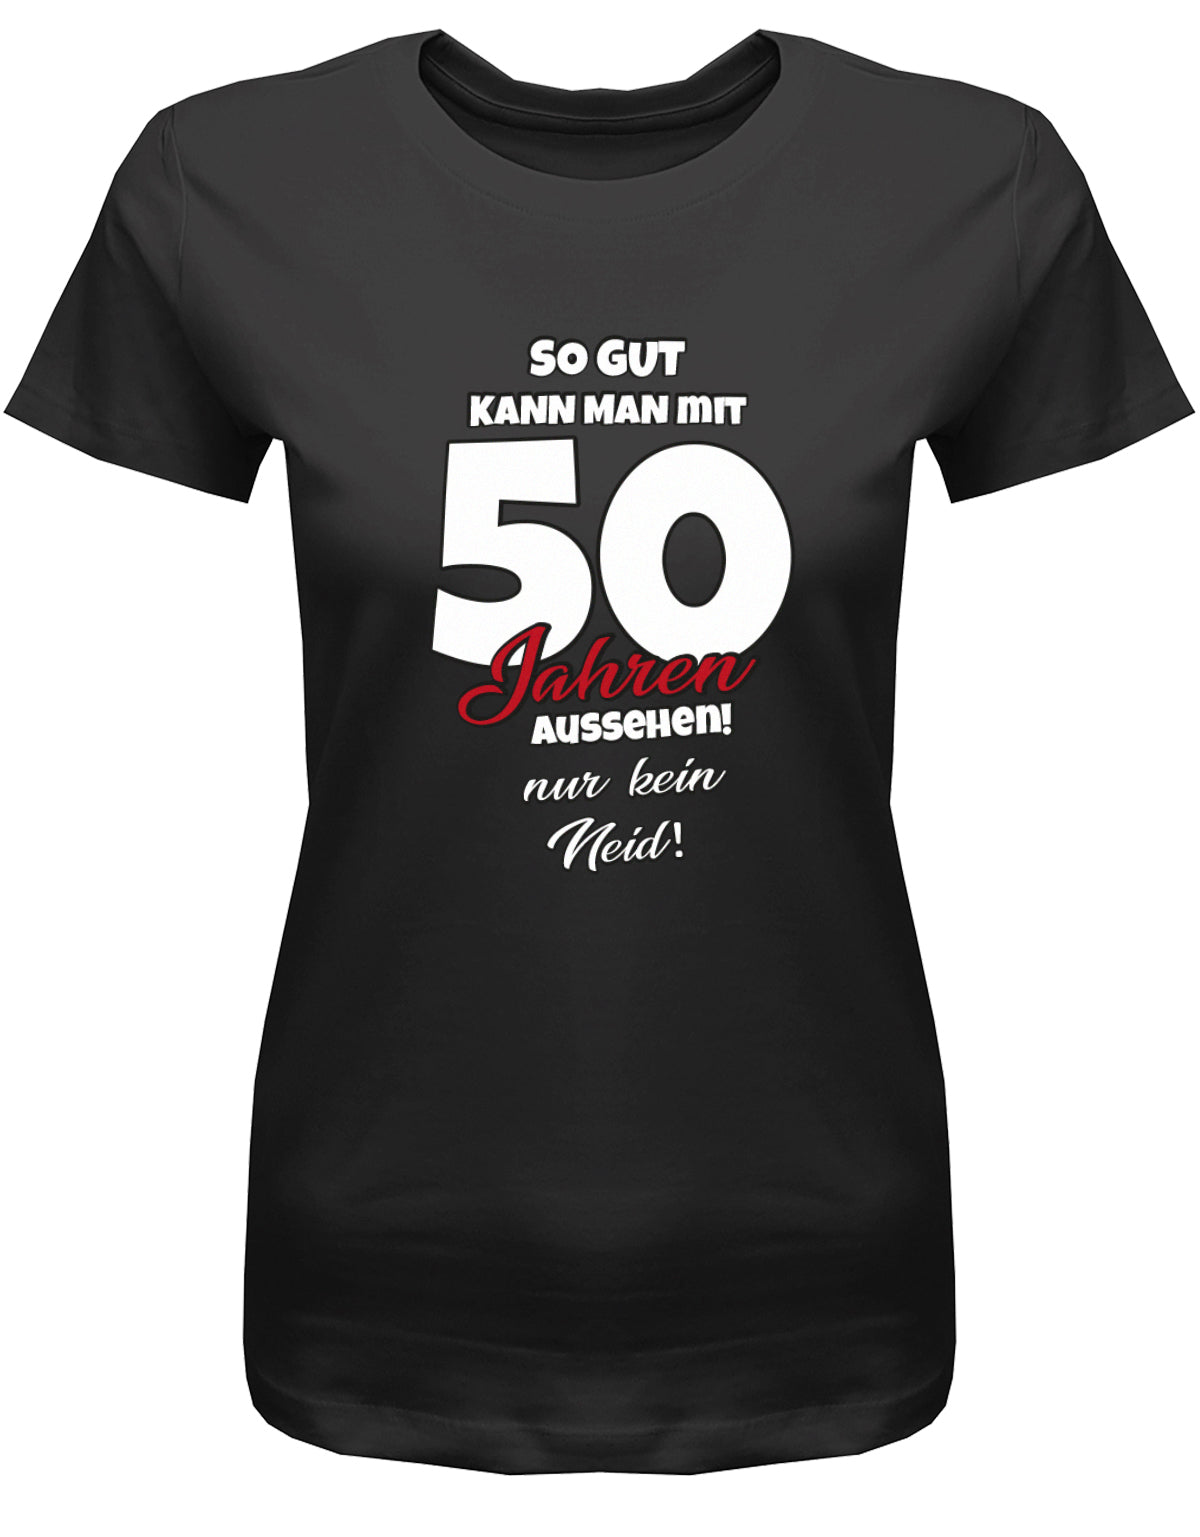 Lustiges T-Shirt zum 50 Geburtstag für die Frau Bedruckt mit So gut kann man mit 50 Jahren aussehen! Nur kein Neid! SChwarz